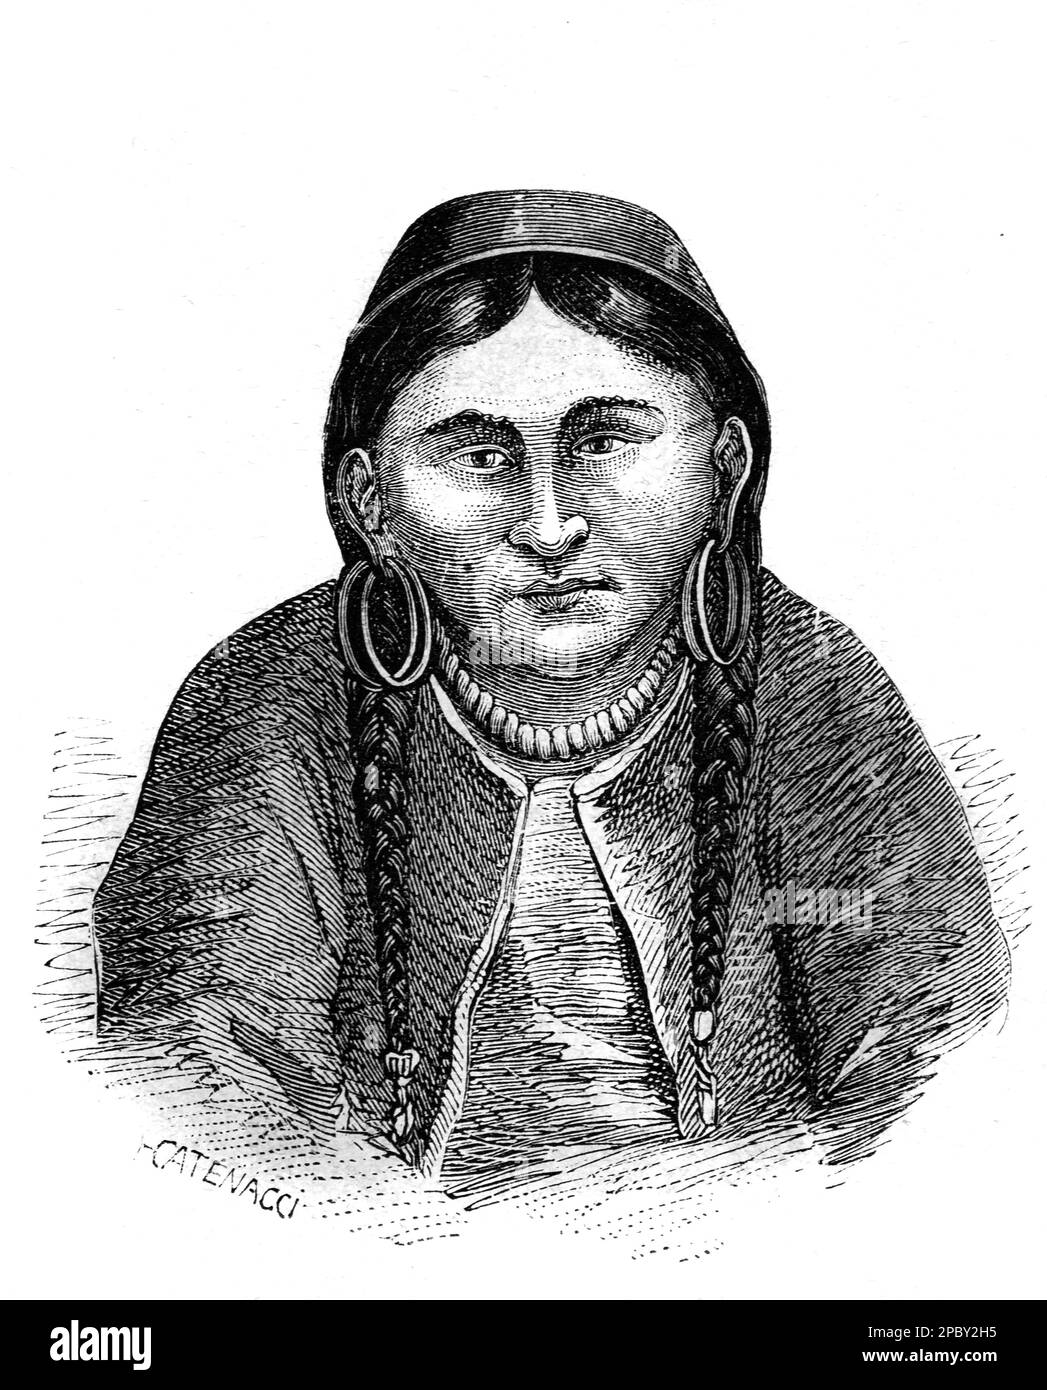 Portrait d'une femme sibérienne portant des vêtements traditionnels ou des vêtements ethniques de Sibérie. Gravure ou illustration vintage ou historique 1862 Banque D'Images